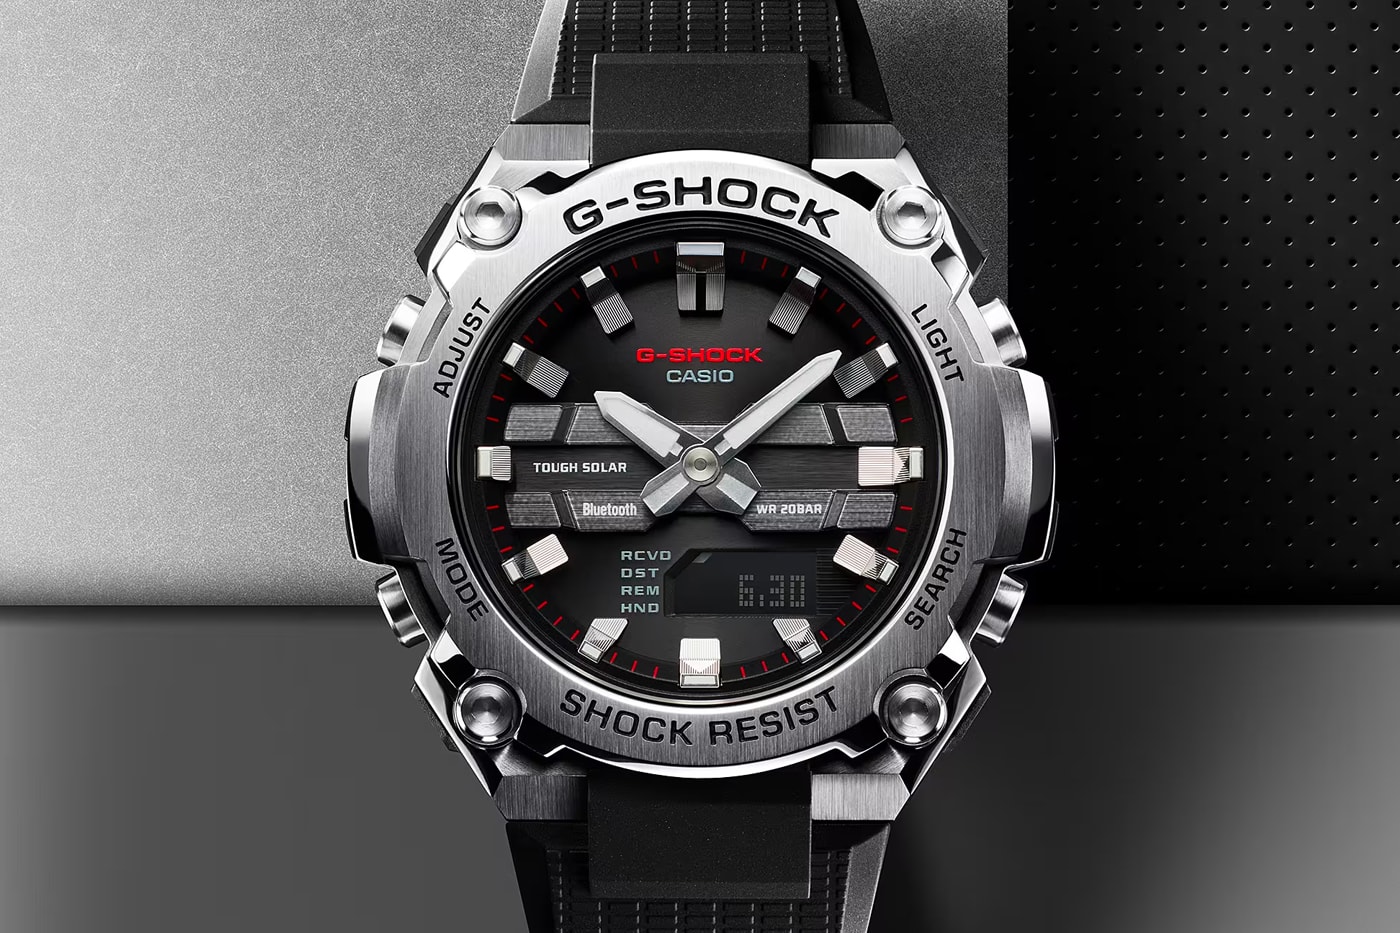 G-SHOCK G-Steel GST-B600 Release Info Watches